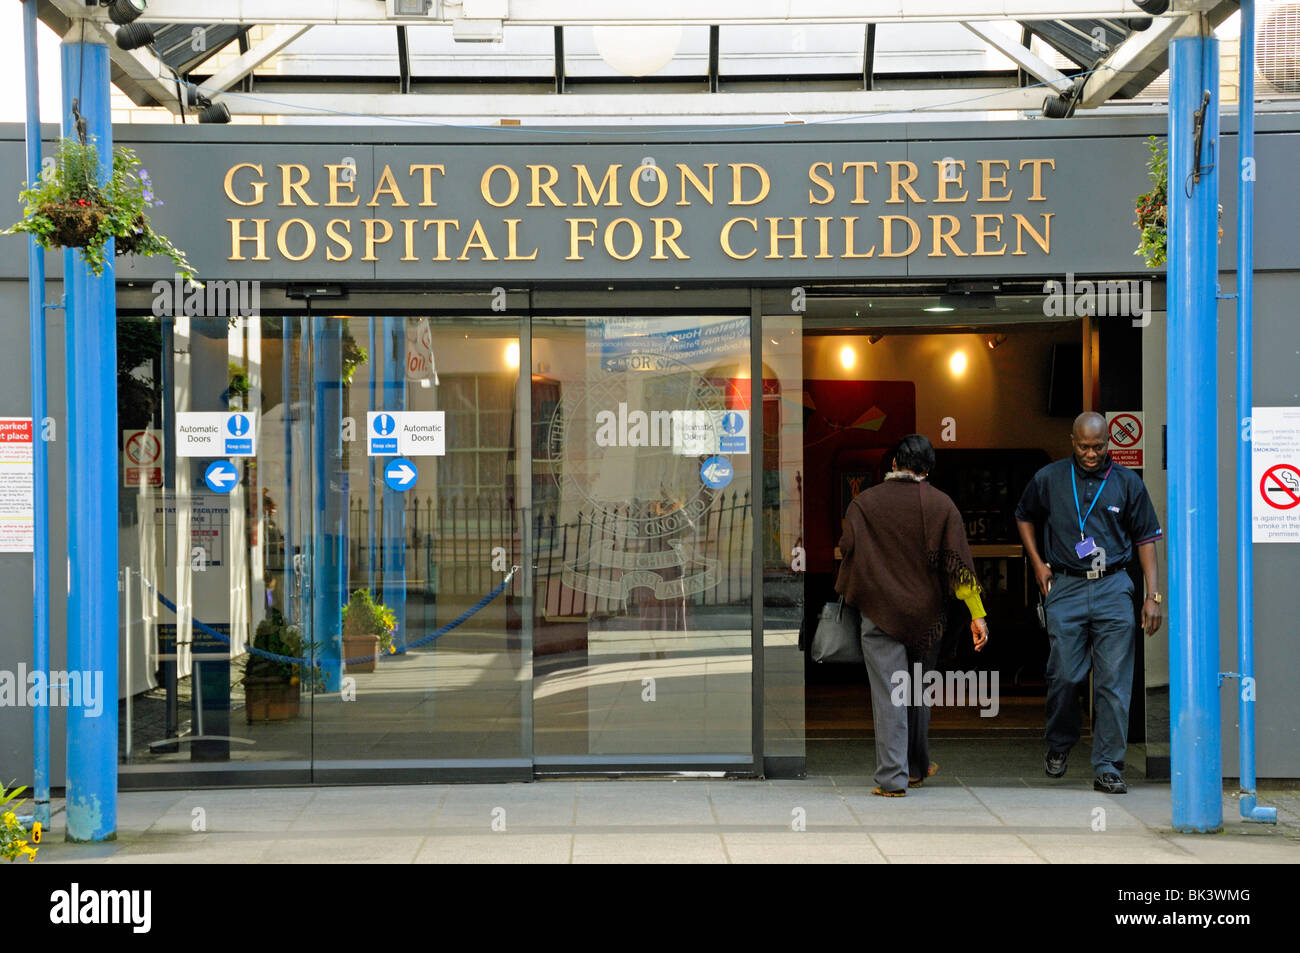 Entrée de l'hôpital Great Ormond Street pour les enfants Bloomsbury Londres Angleterre Royaume-uni Banque D'Images